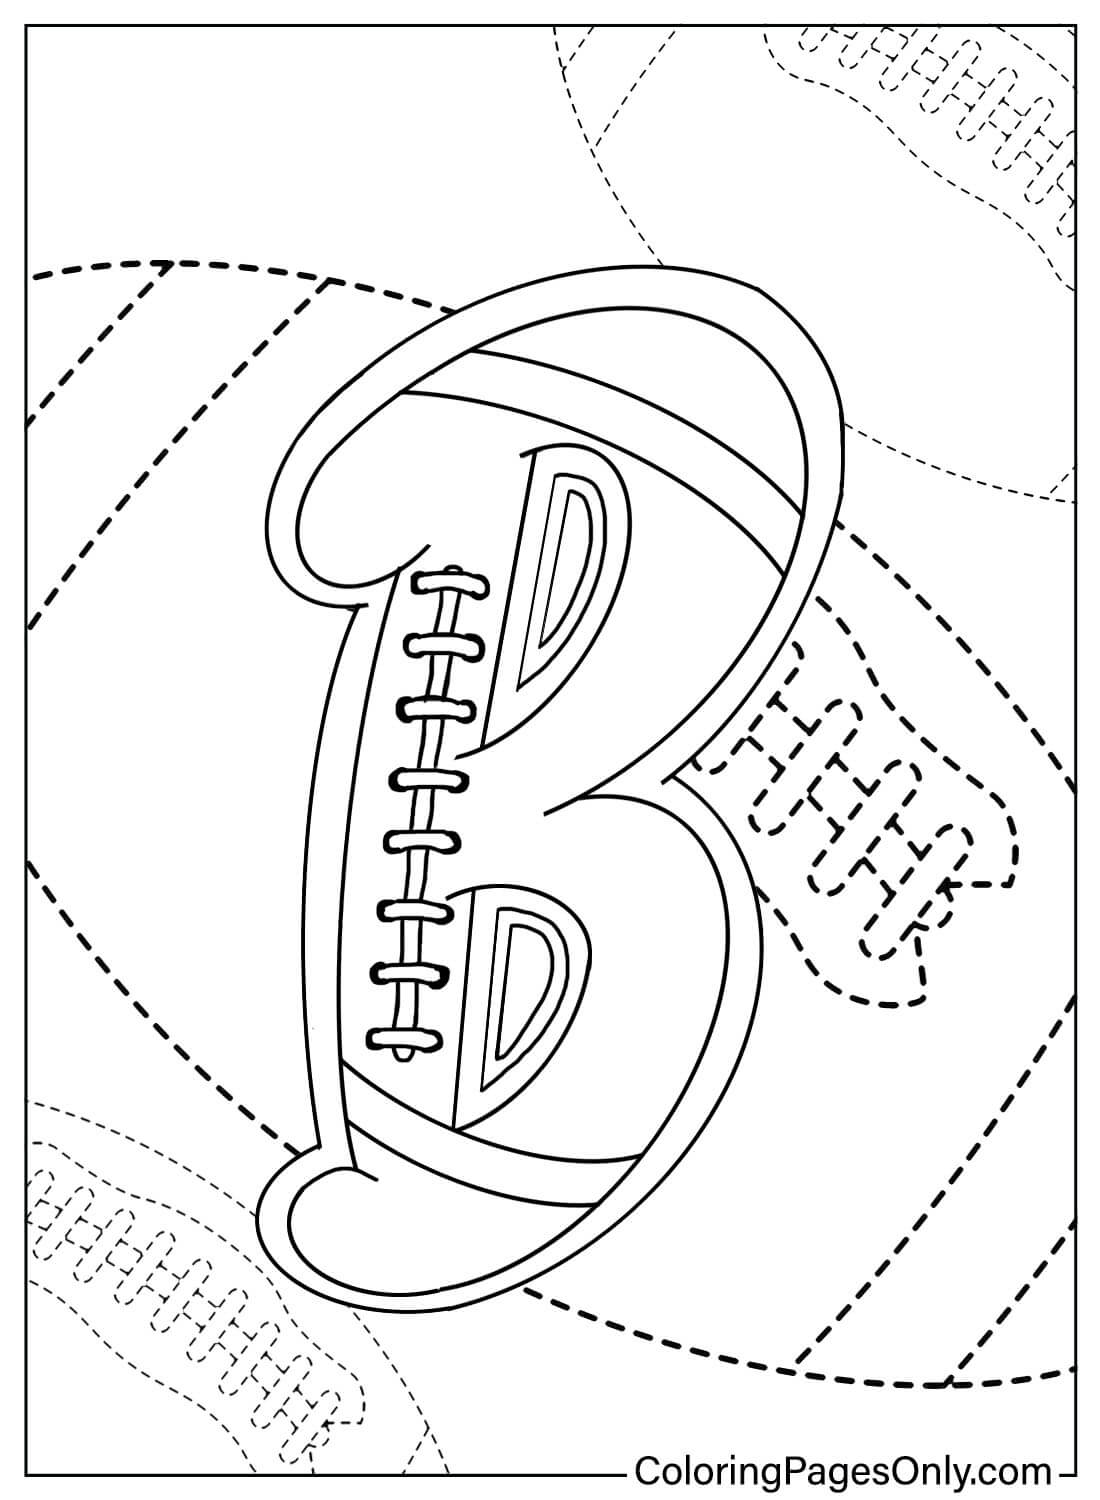 Página para colorear de la letra B del alfabeto deportivo de la letra B